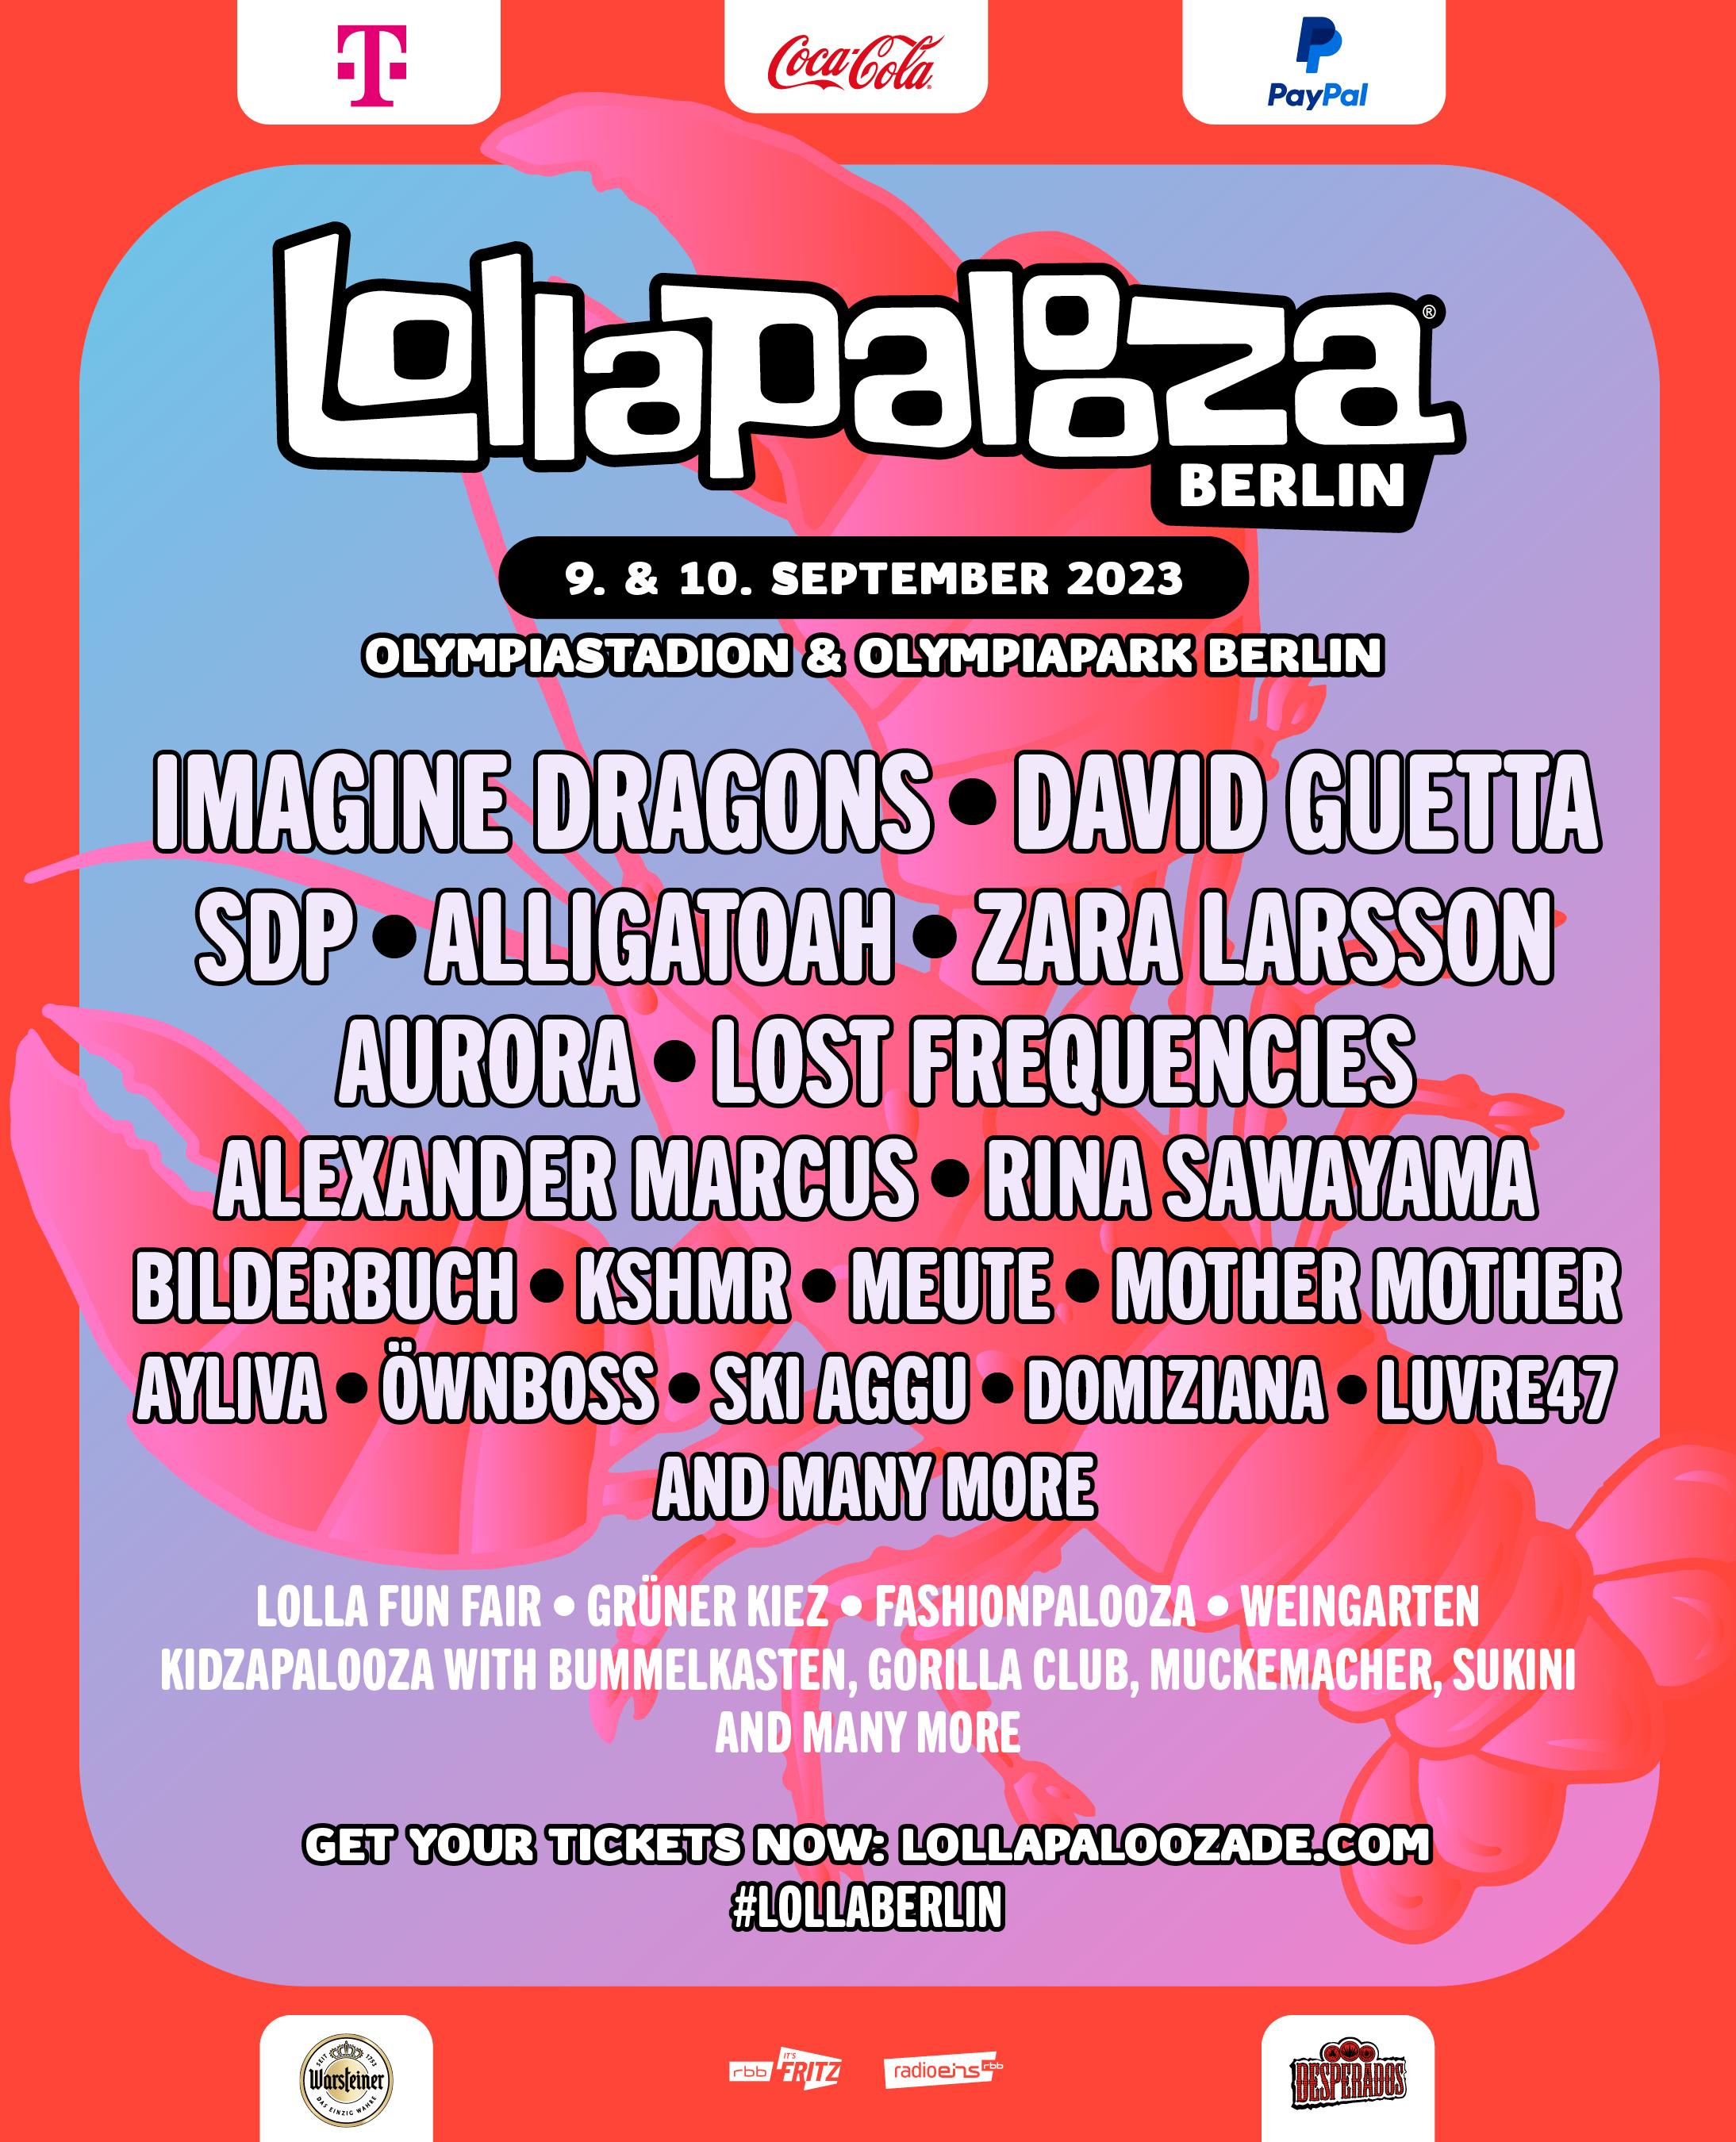 Lollapalooza Berlin 2023 overseas festivals Festival Forums